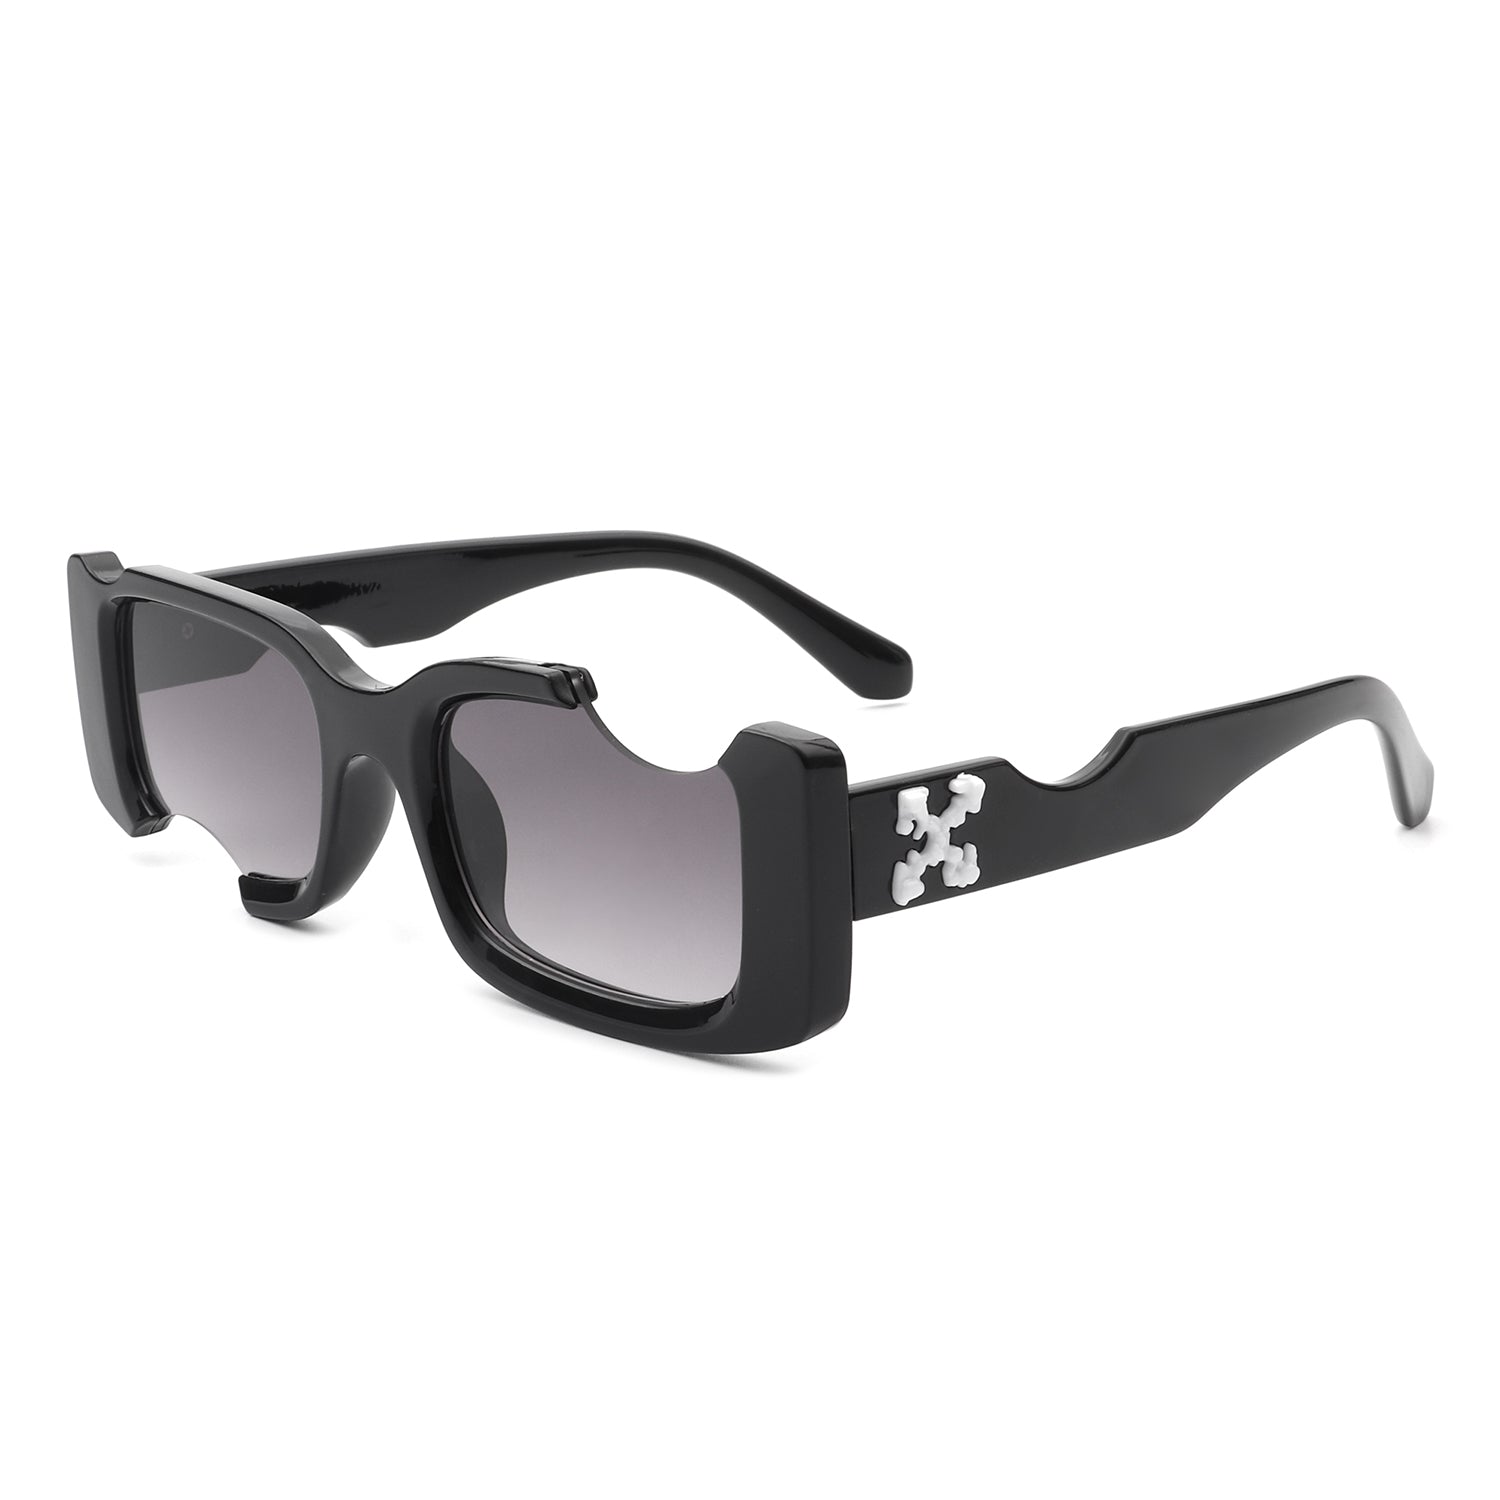 HS1072 - Rectangular Geometric Modern Cut-out Futuristic Square Sunglasses